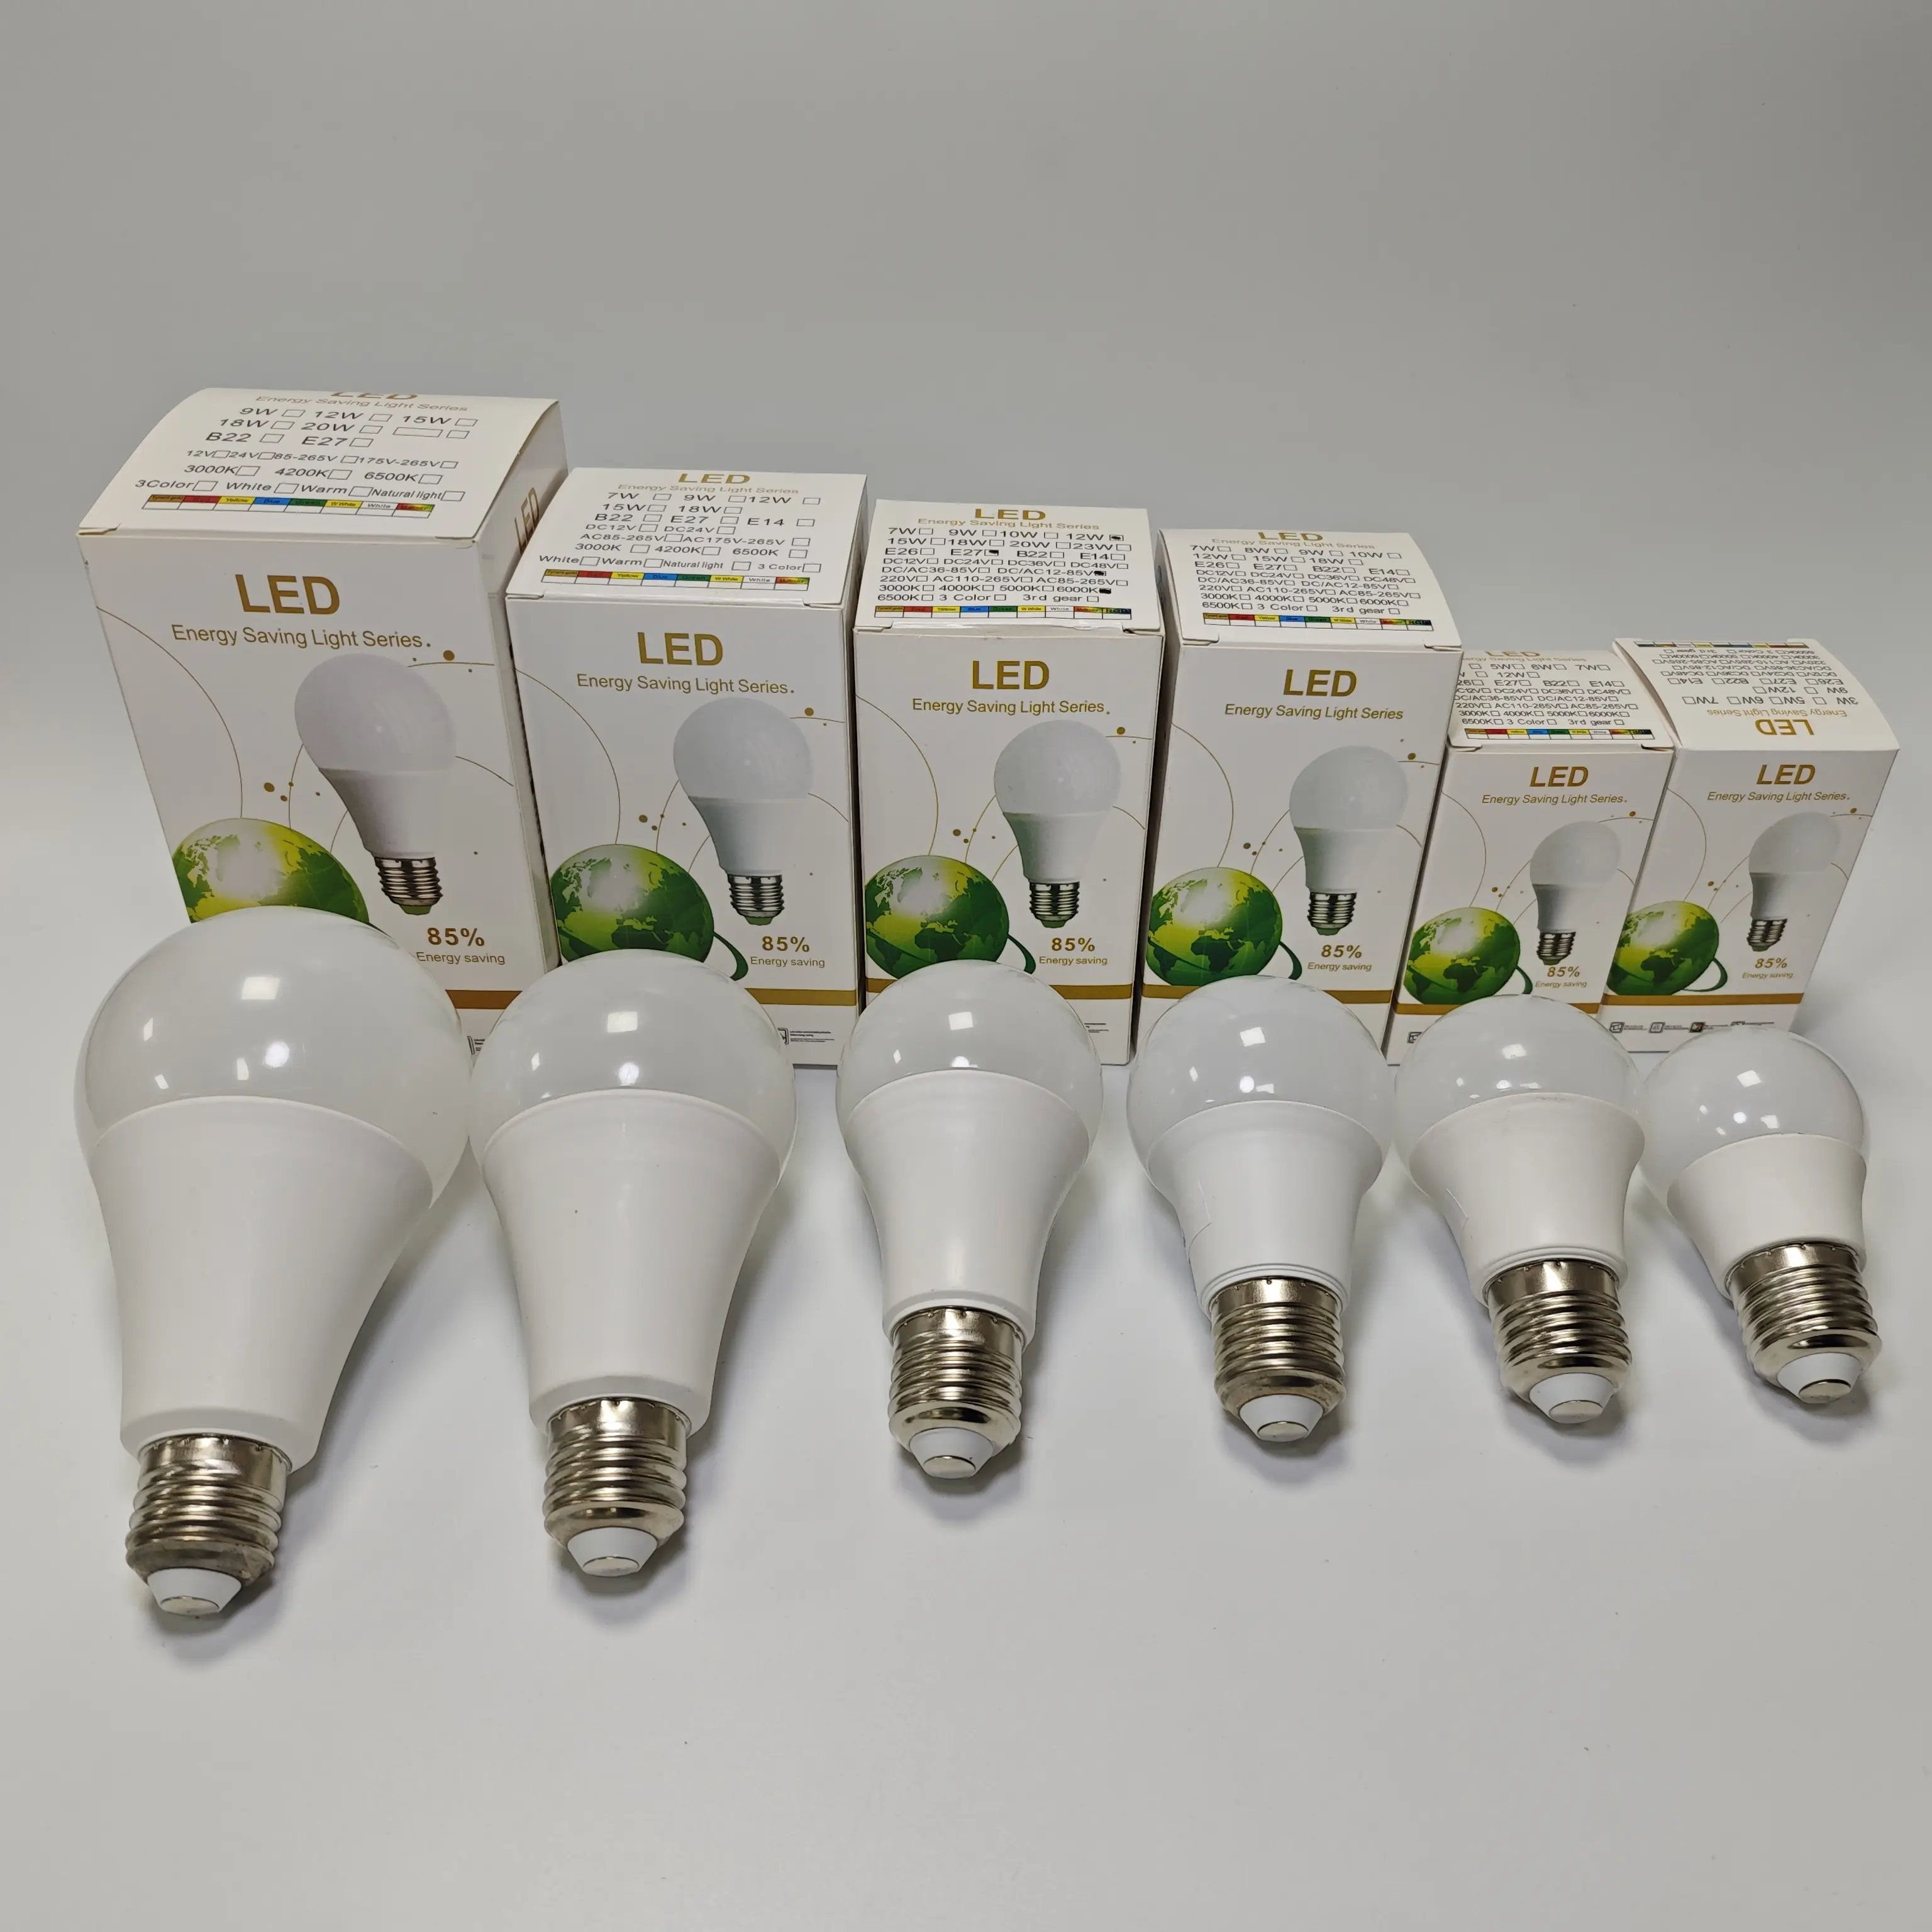 Hete Verkoop Led Lamp 12 Watt Energiebesparende Led Lamp Aluminium Gecoate A65 Led Lamp